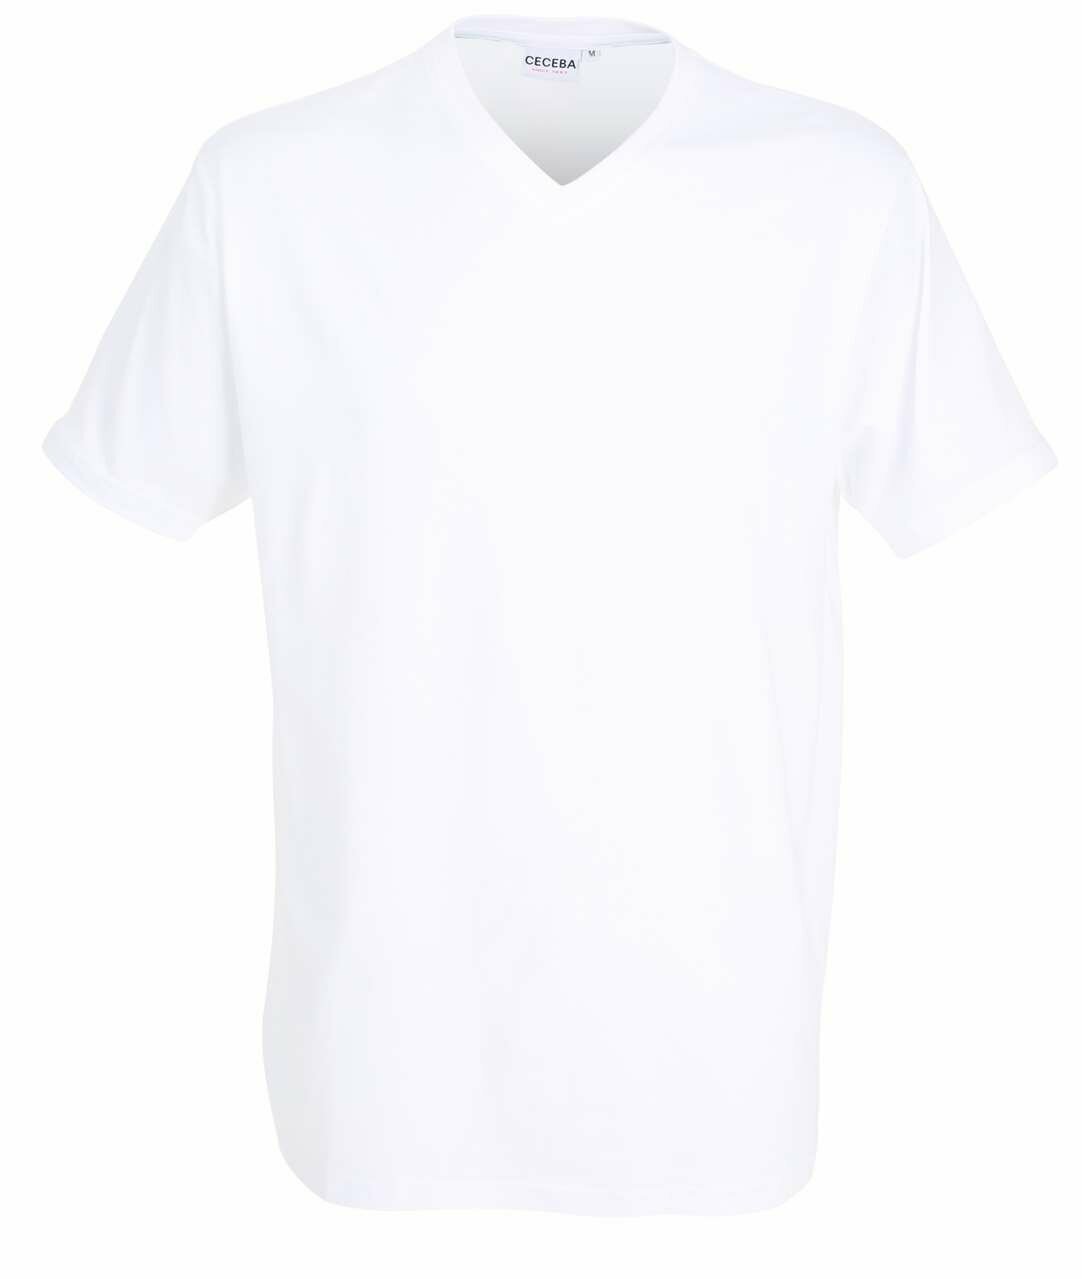 2er Pack Ceceba Herren Pure Cotton Shirt V-Ausschnitt